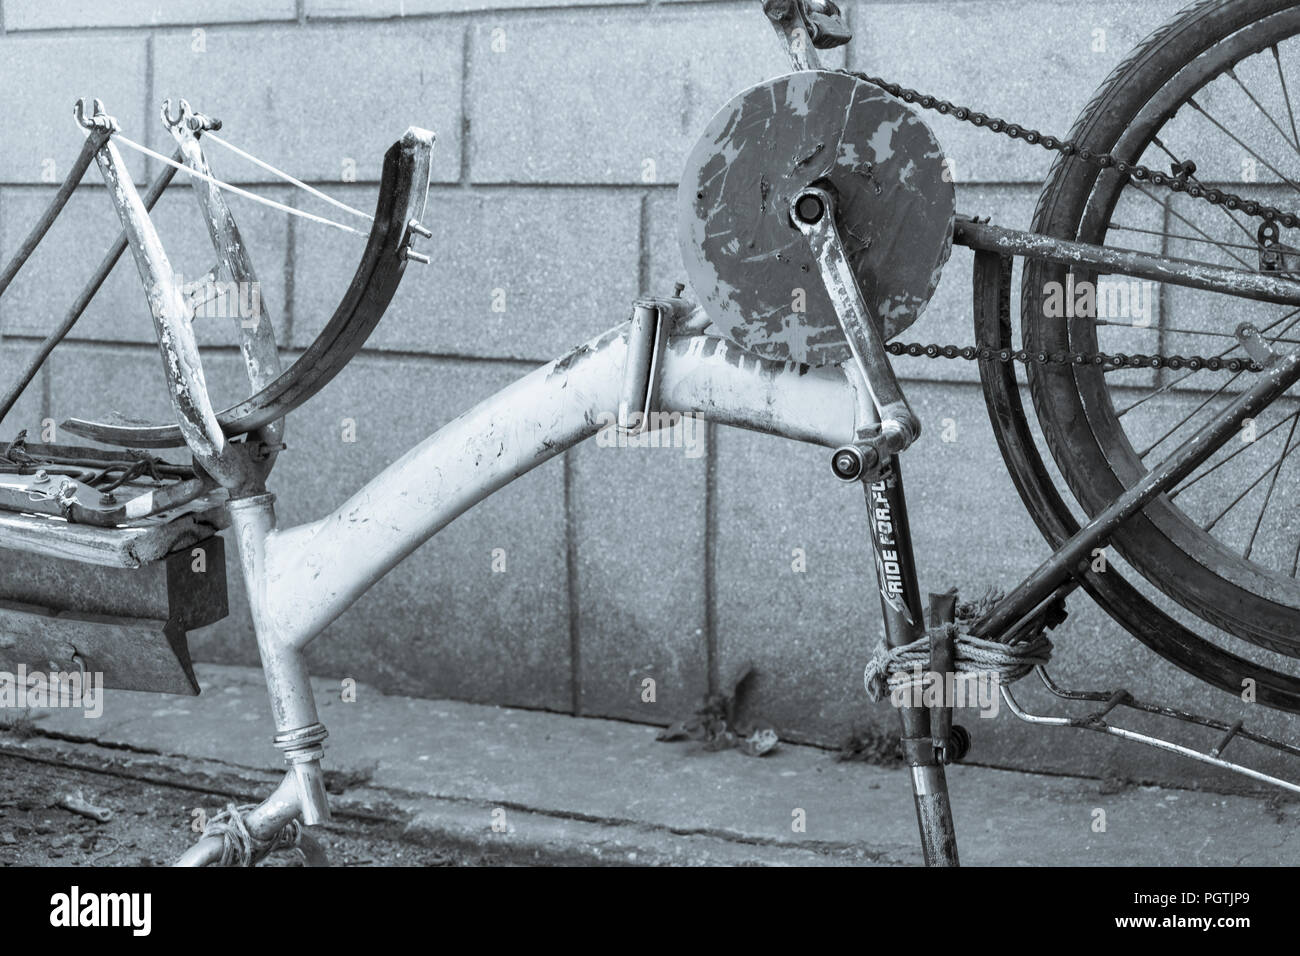 Bicicleta de carretera en un soporte de reparación en un taller de  bicicletas Fotografía de stock - Alamy